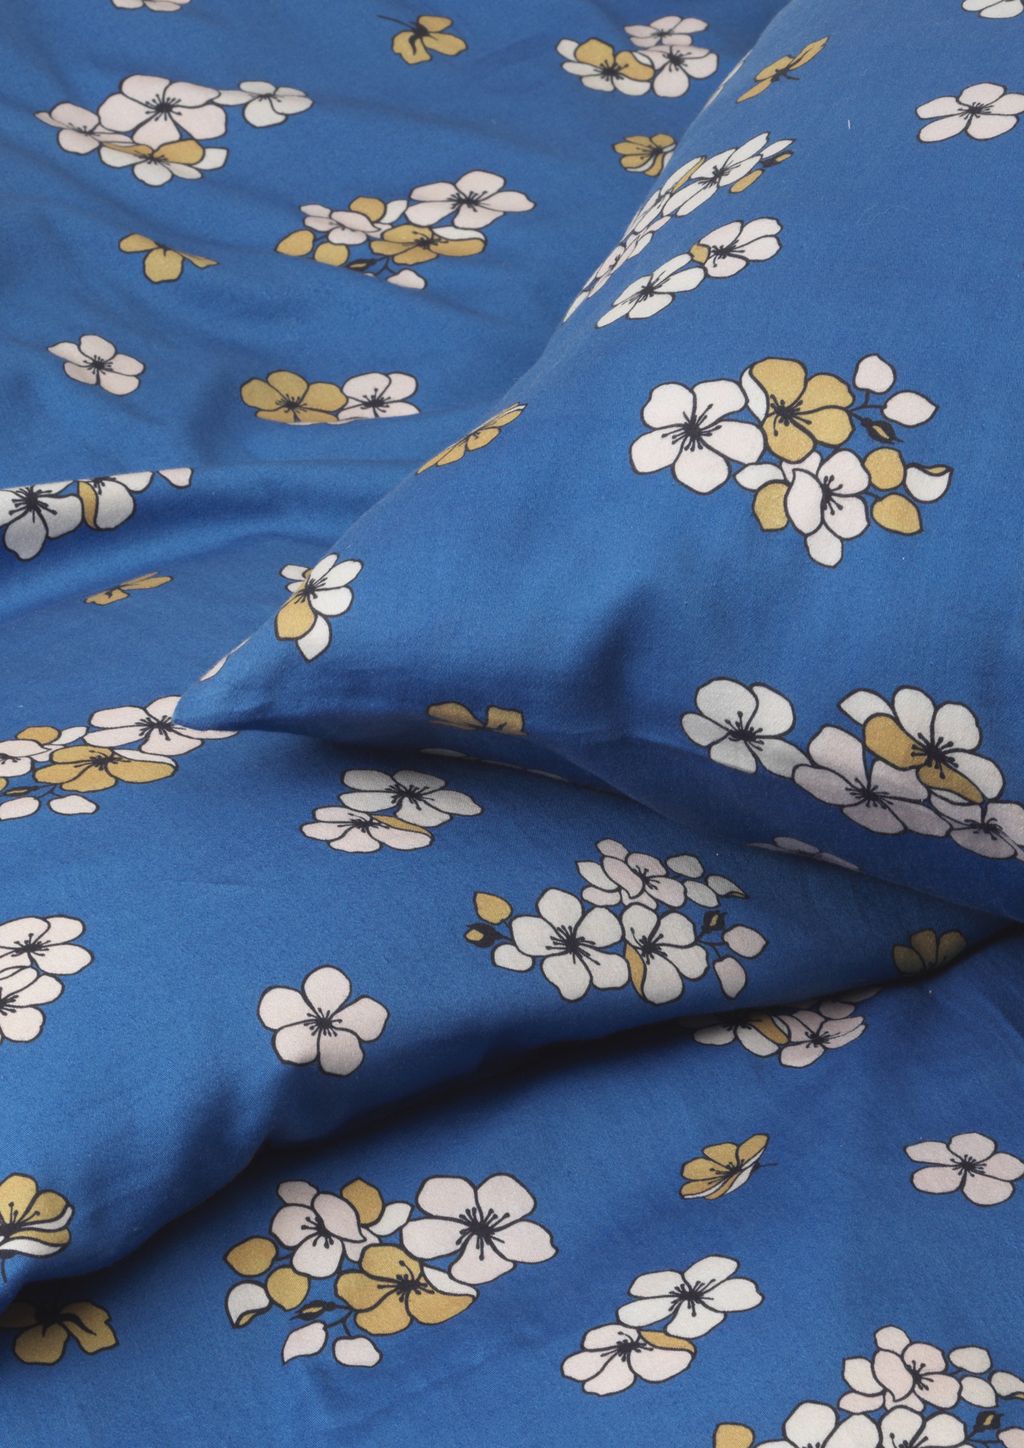 Juna Grand příjemně lůžkovou prádlo 140 x200 cm, modrá